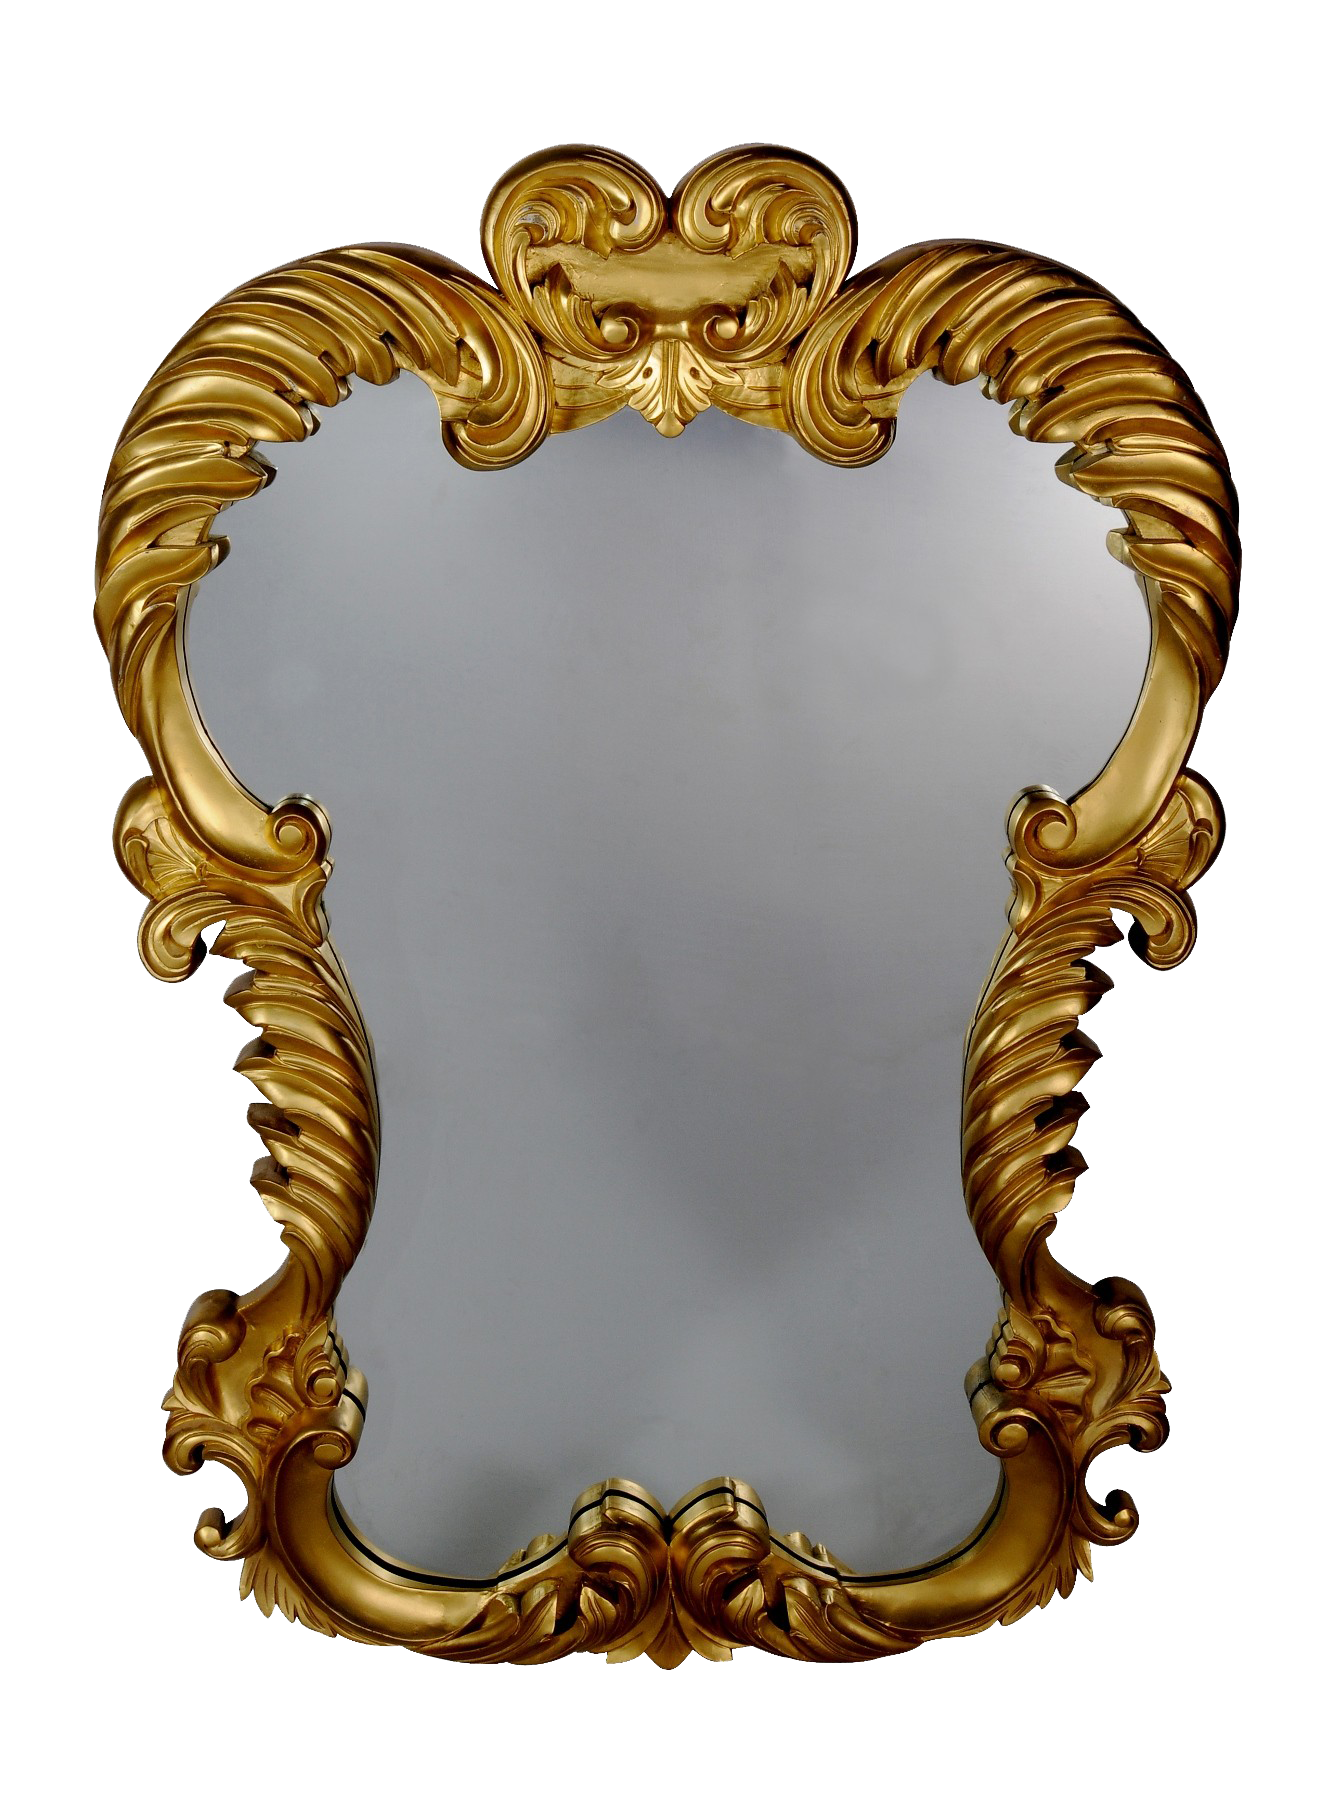 Marco de espejo de oro PNG imagen Transparente